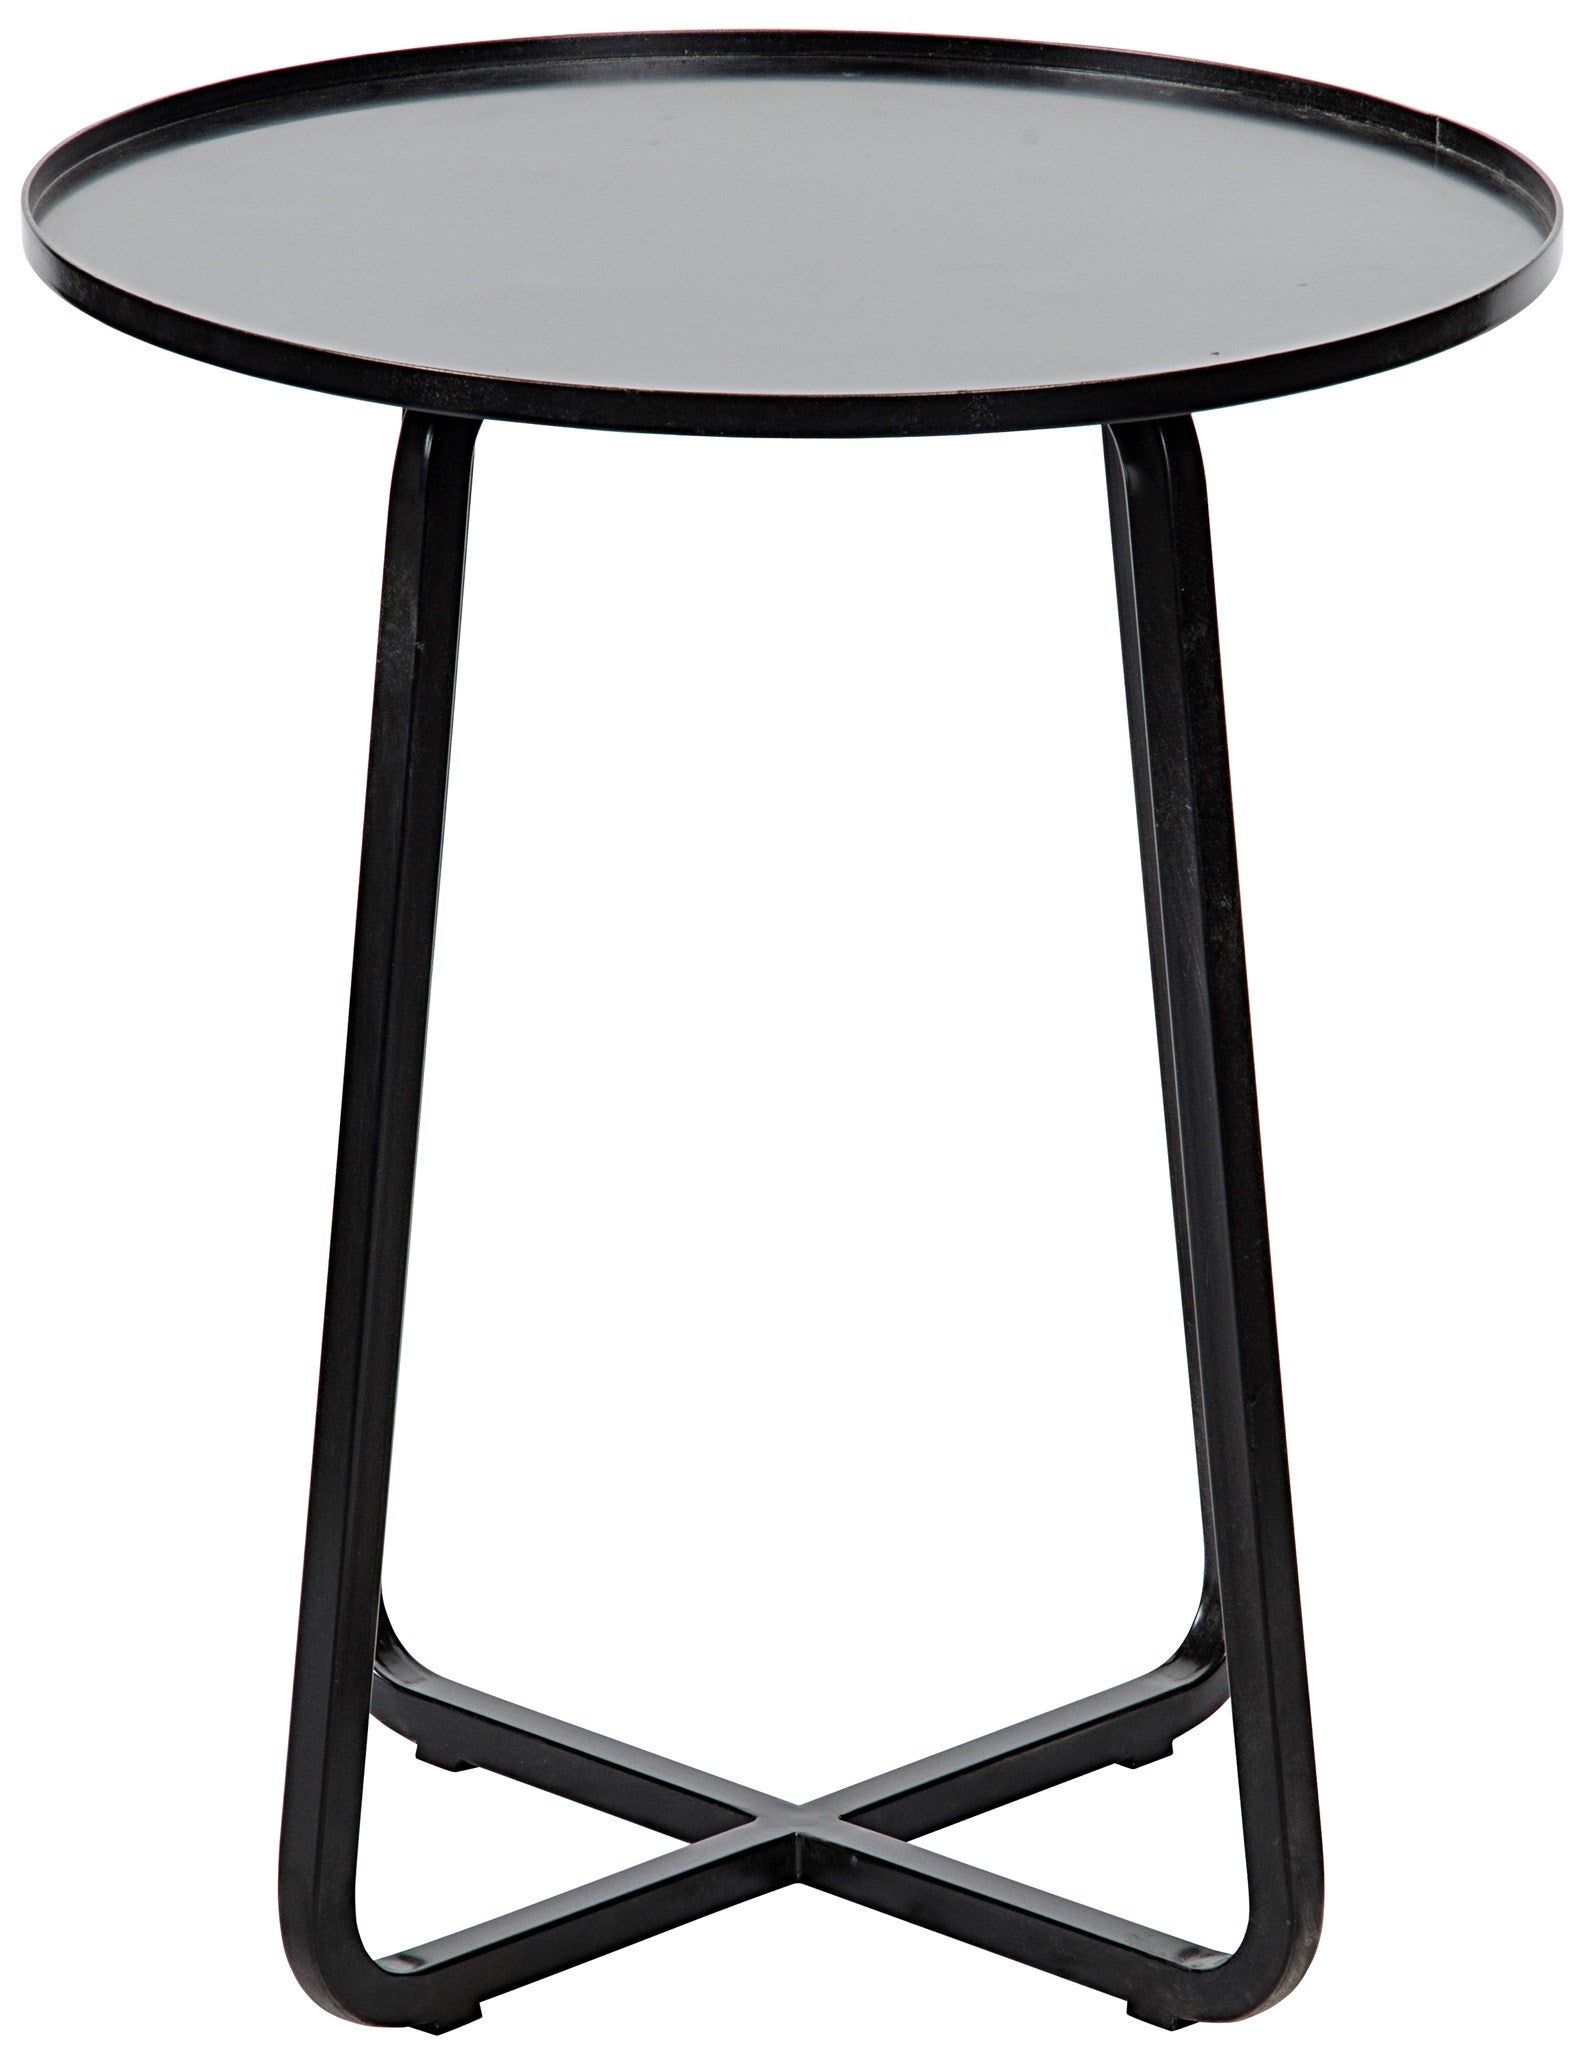 Kimana Drinks Table, Black Metal - Furniture - Tipplergoods